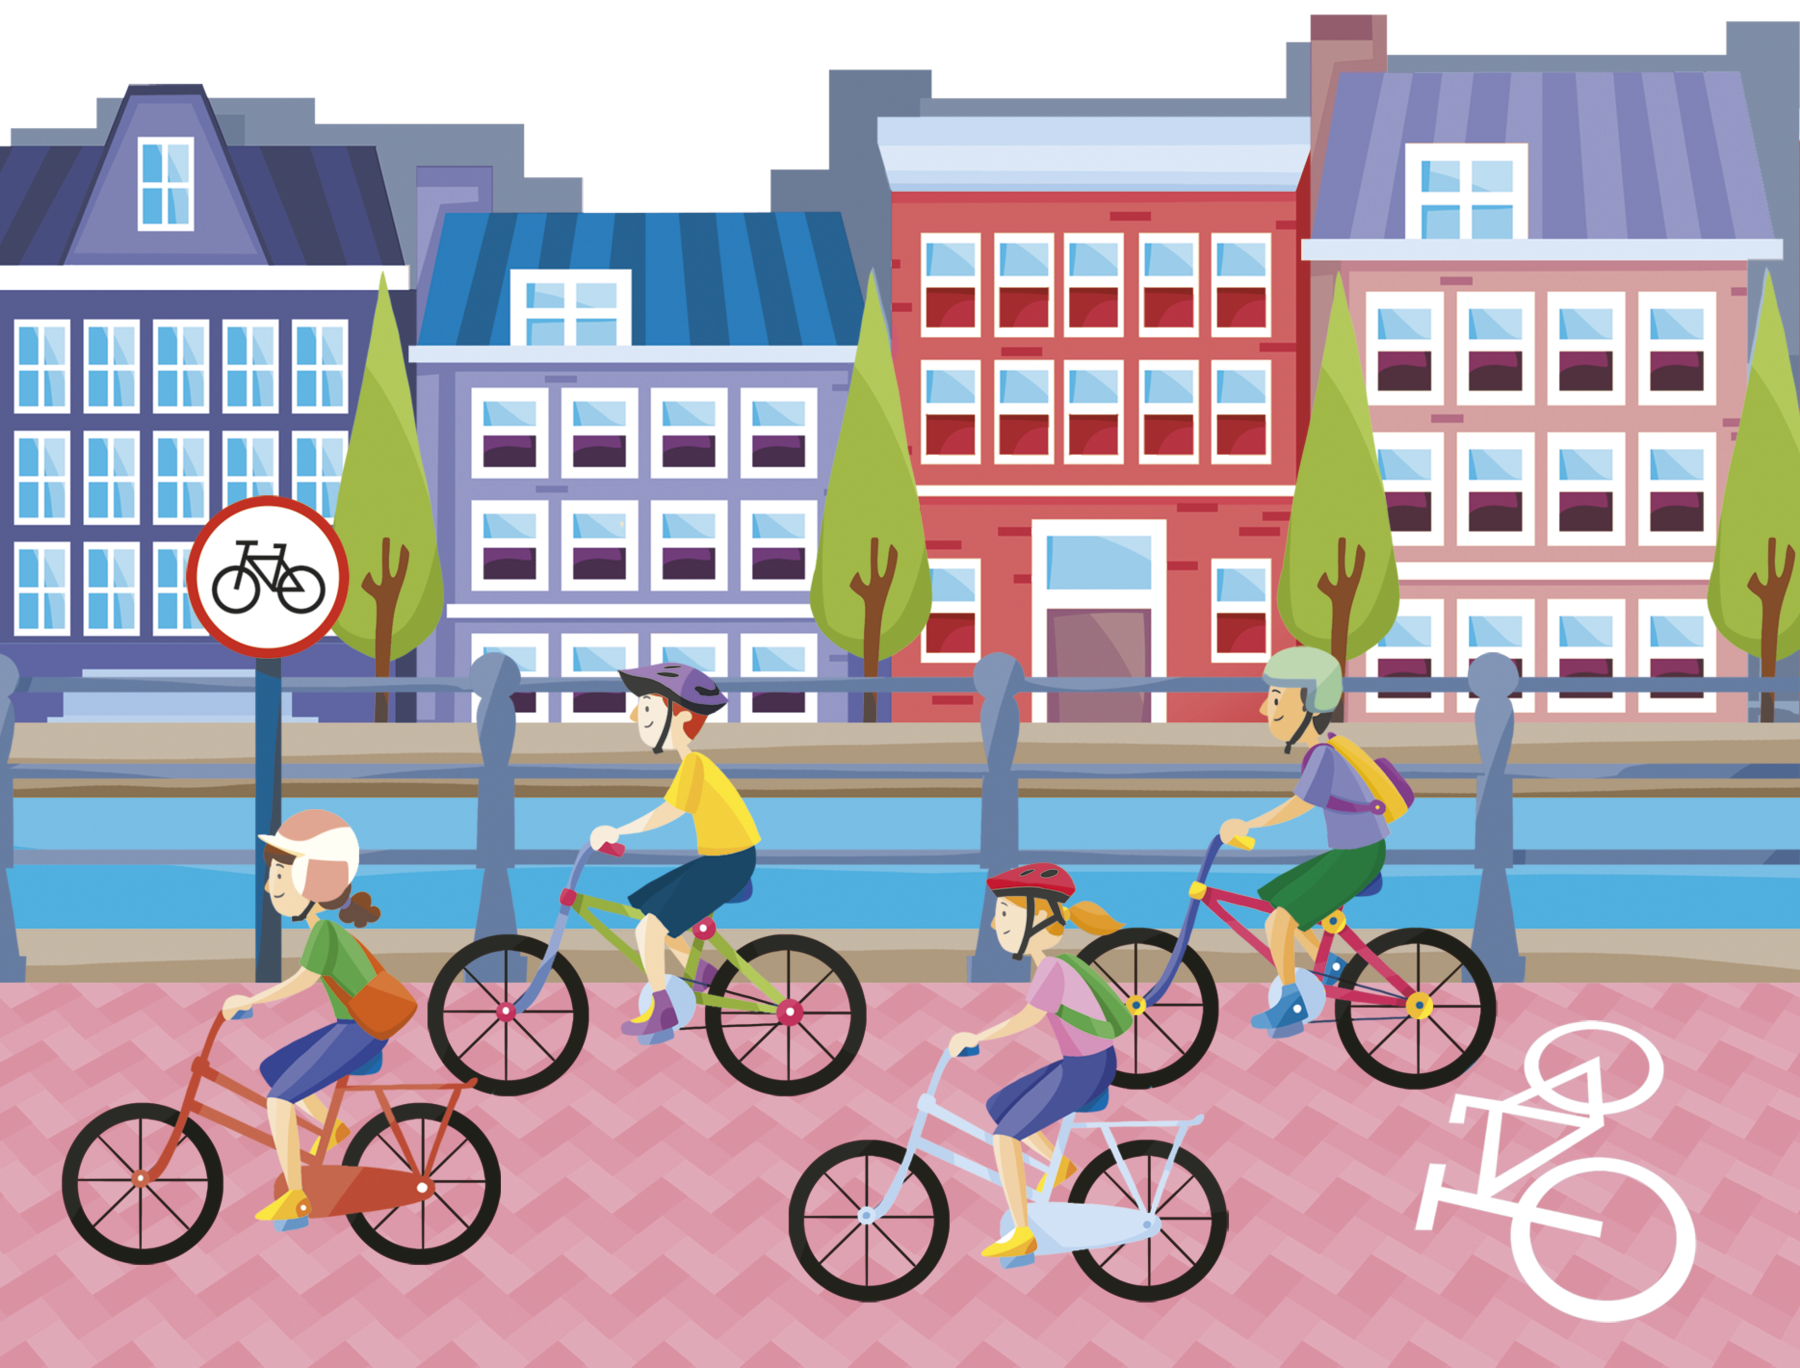 Ilustração. Pessoas usando capacete e roupas coloridas. Elas estão montadas em bicicletas andando em uma rua com o desenho de uma bicicleta no chão. Ao lado, uma placa de trânsito com o desenho de uma bicicleta. Atrás, um corpo de água e diversos edifícios.